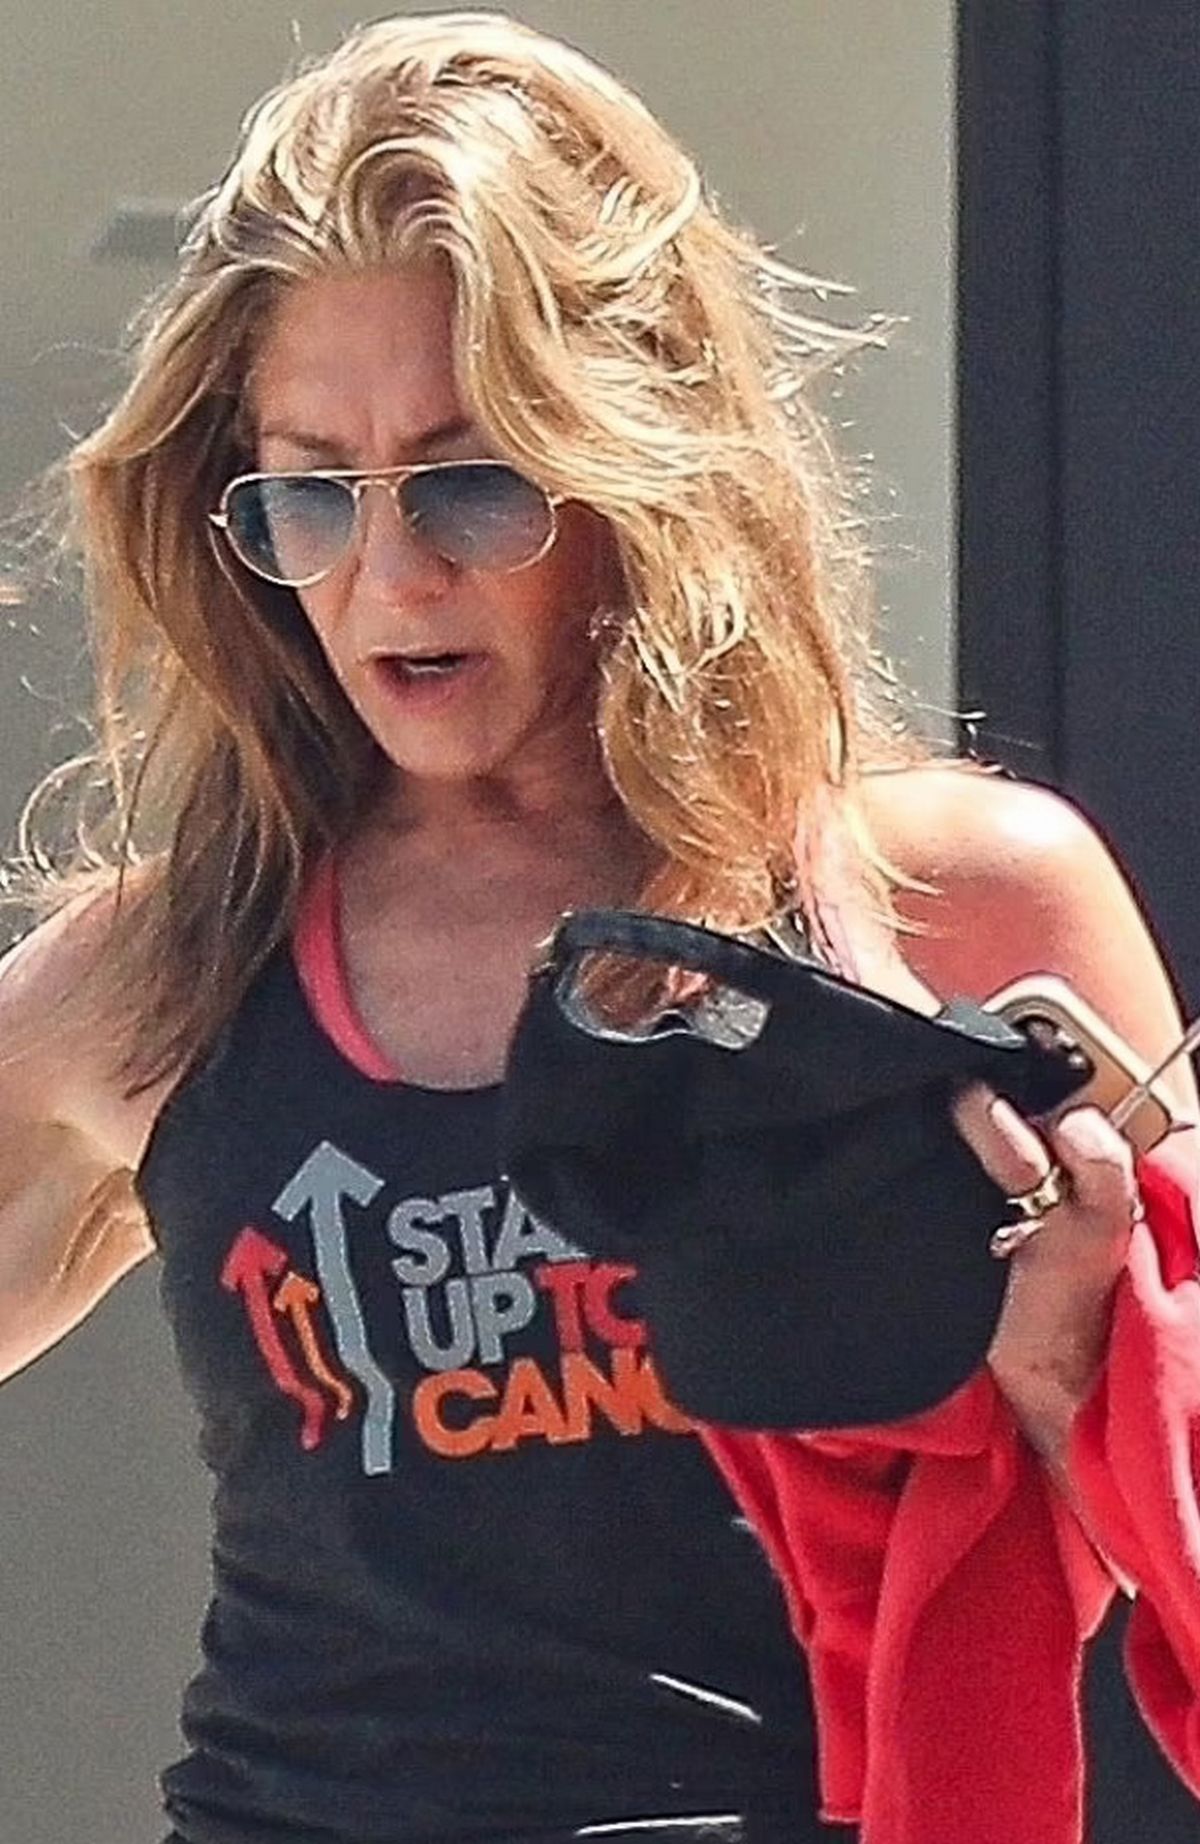 La dernière apparition de Jennifer a coïncidé avec l’annonce de sa collaboration avec la marque de fitness Pvolve.